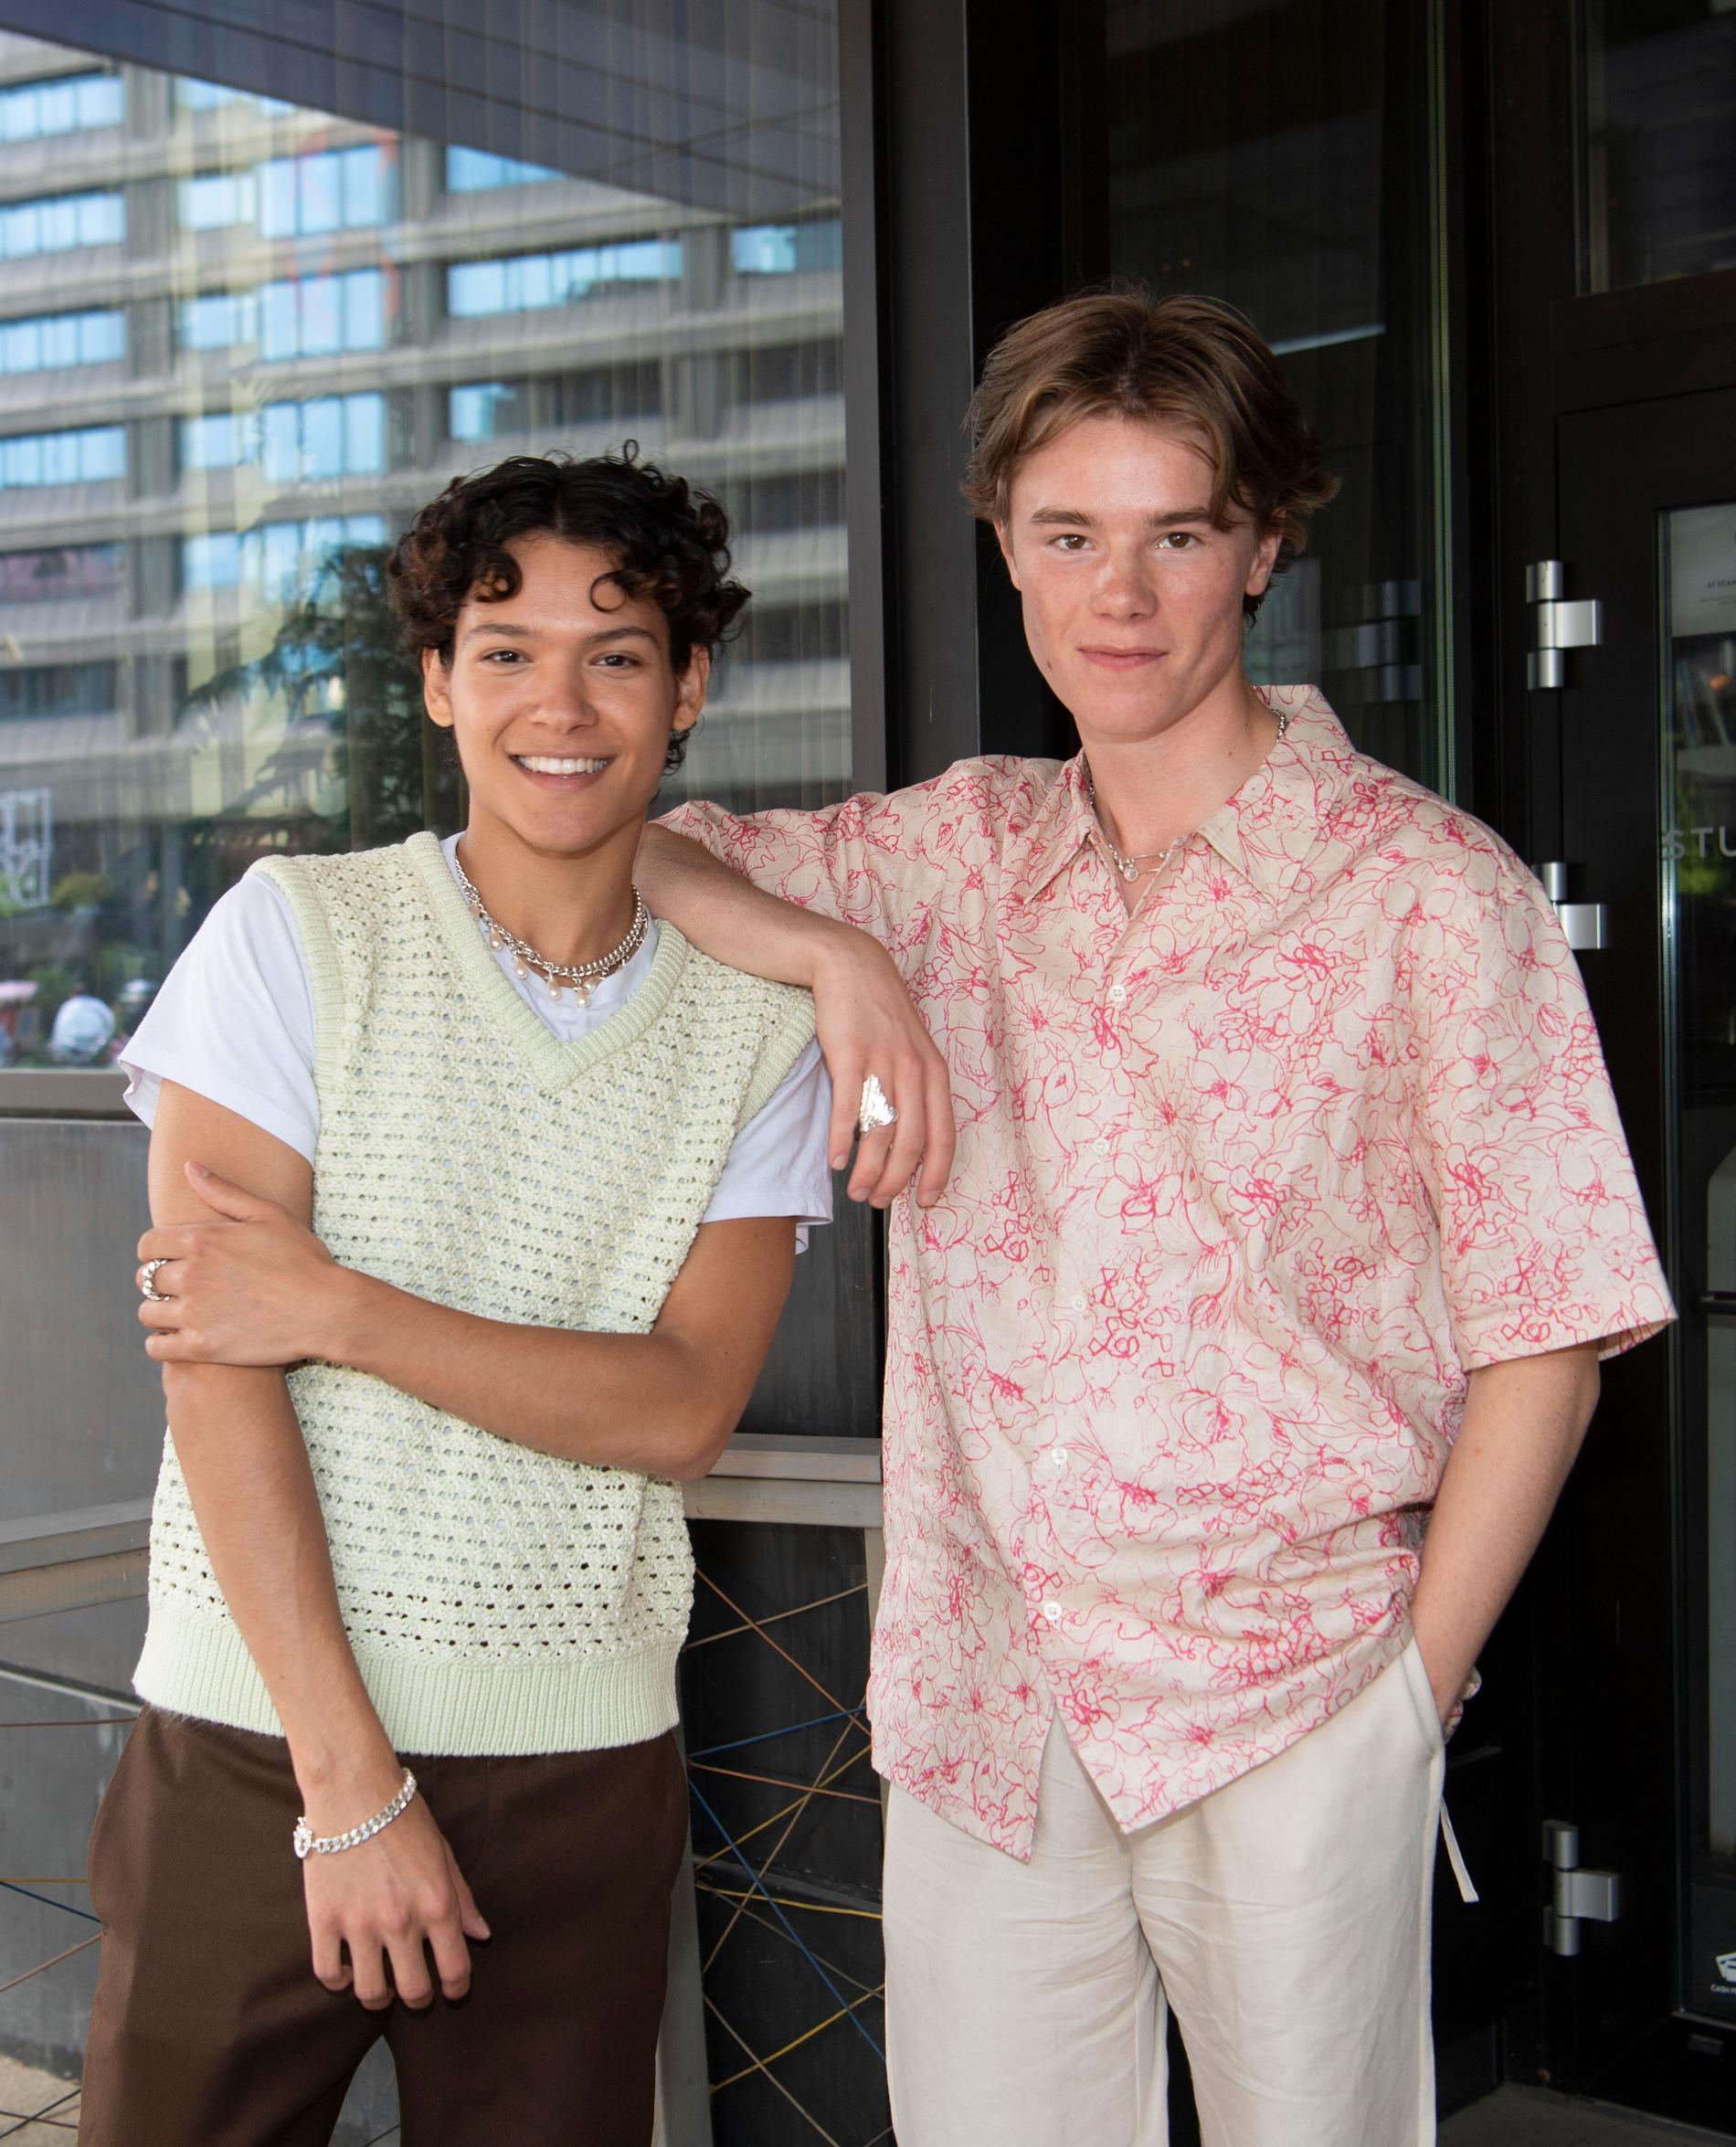 Omar Rudberg och Edvin Ryding spelar Simon och prins Wilhelm i Netflix-serien "Young royals".